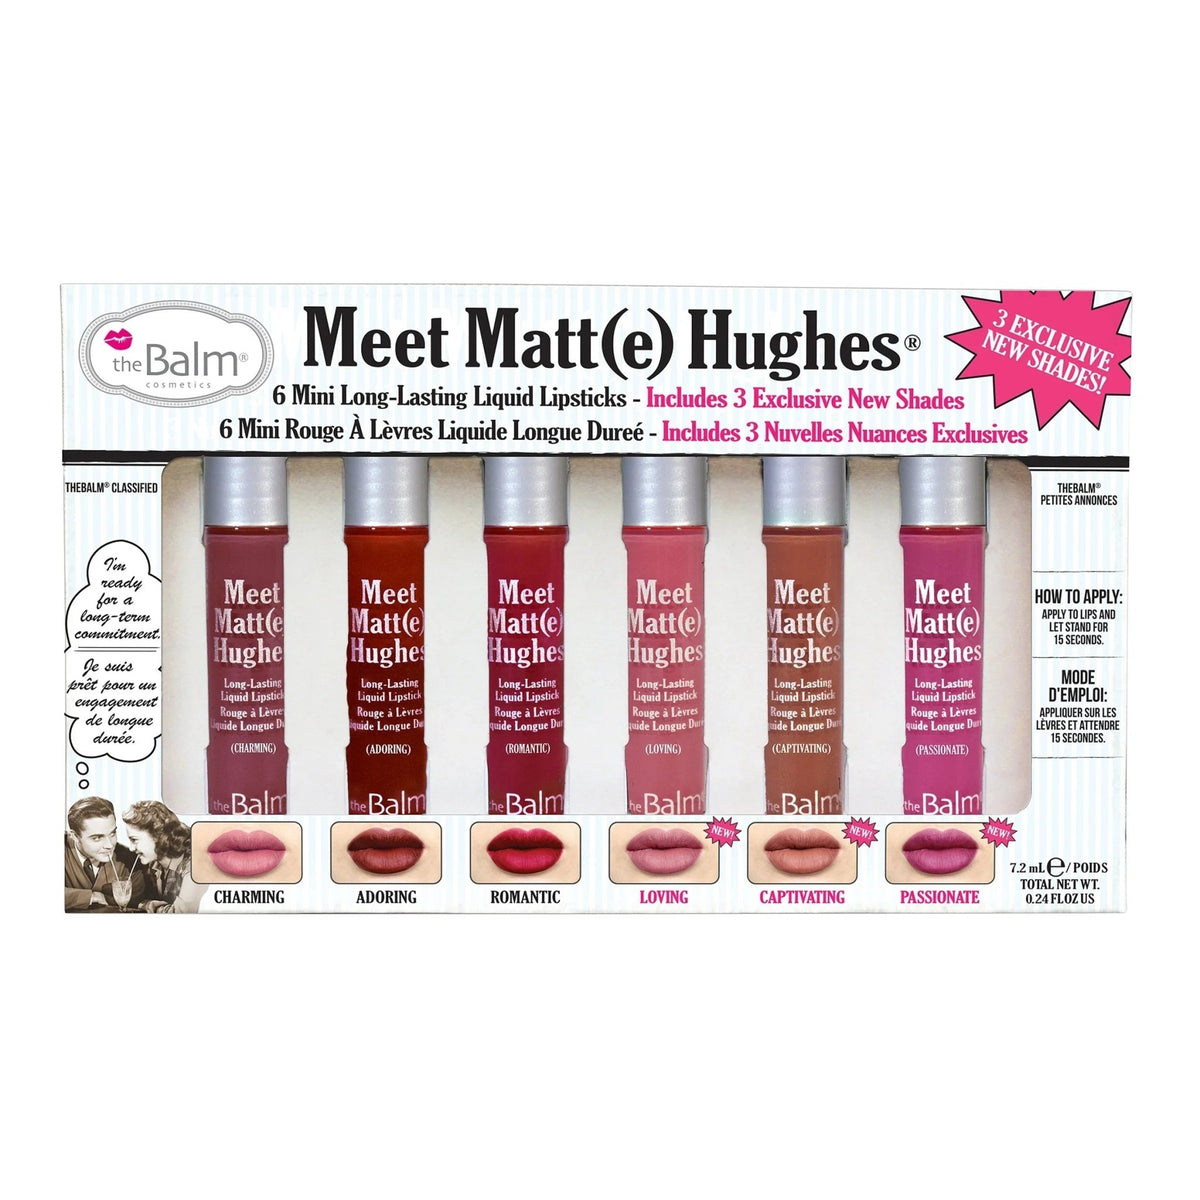 TheBalm Meet Matt(e) Hughes Vol. 3 Set of 6 Mini Liquid Lipsticks - AllurebeautypkTheBalm Meet Matt(e) Hughes Vol. 3 Set of 6 Mini Liquid Lipsticks